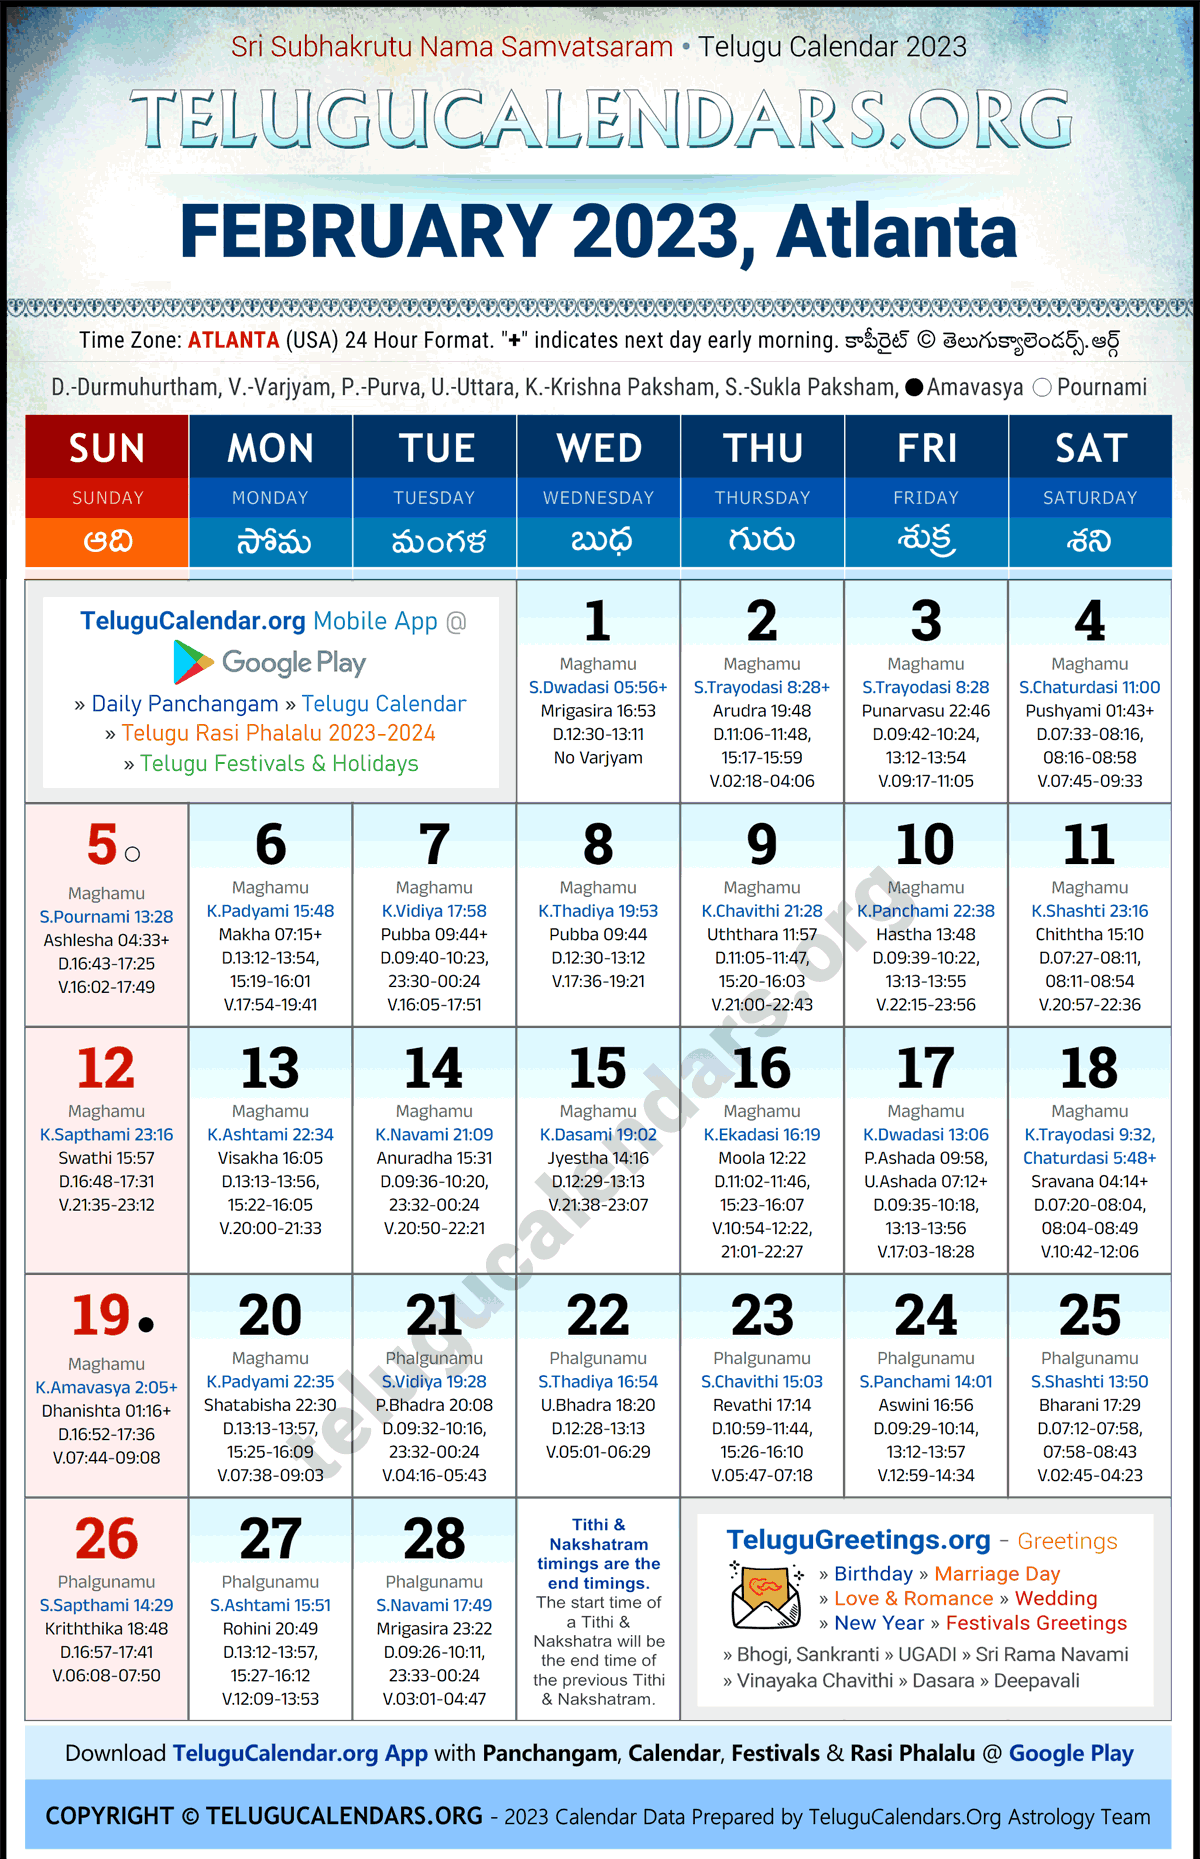 Telugu Calendar 2023 February Festivals for Atlanta